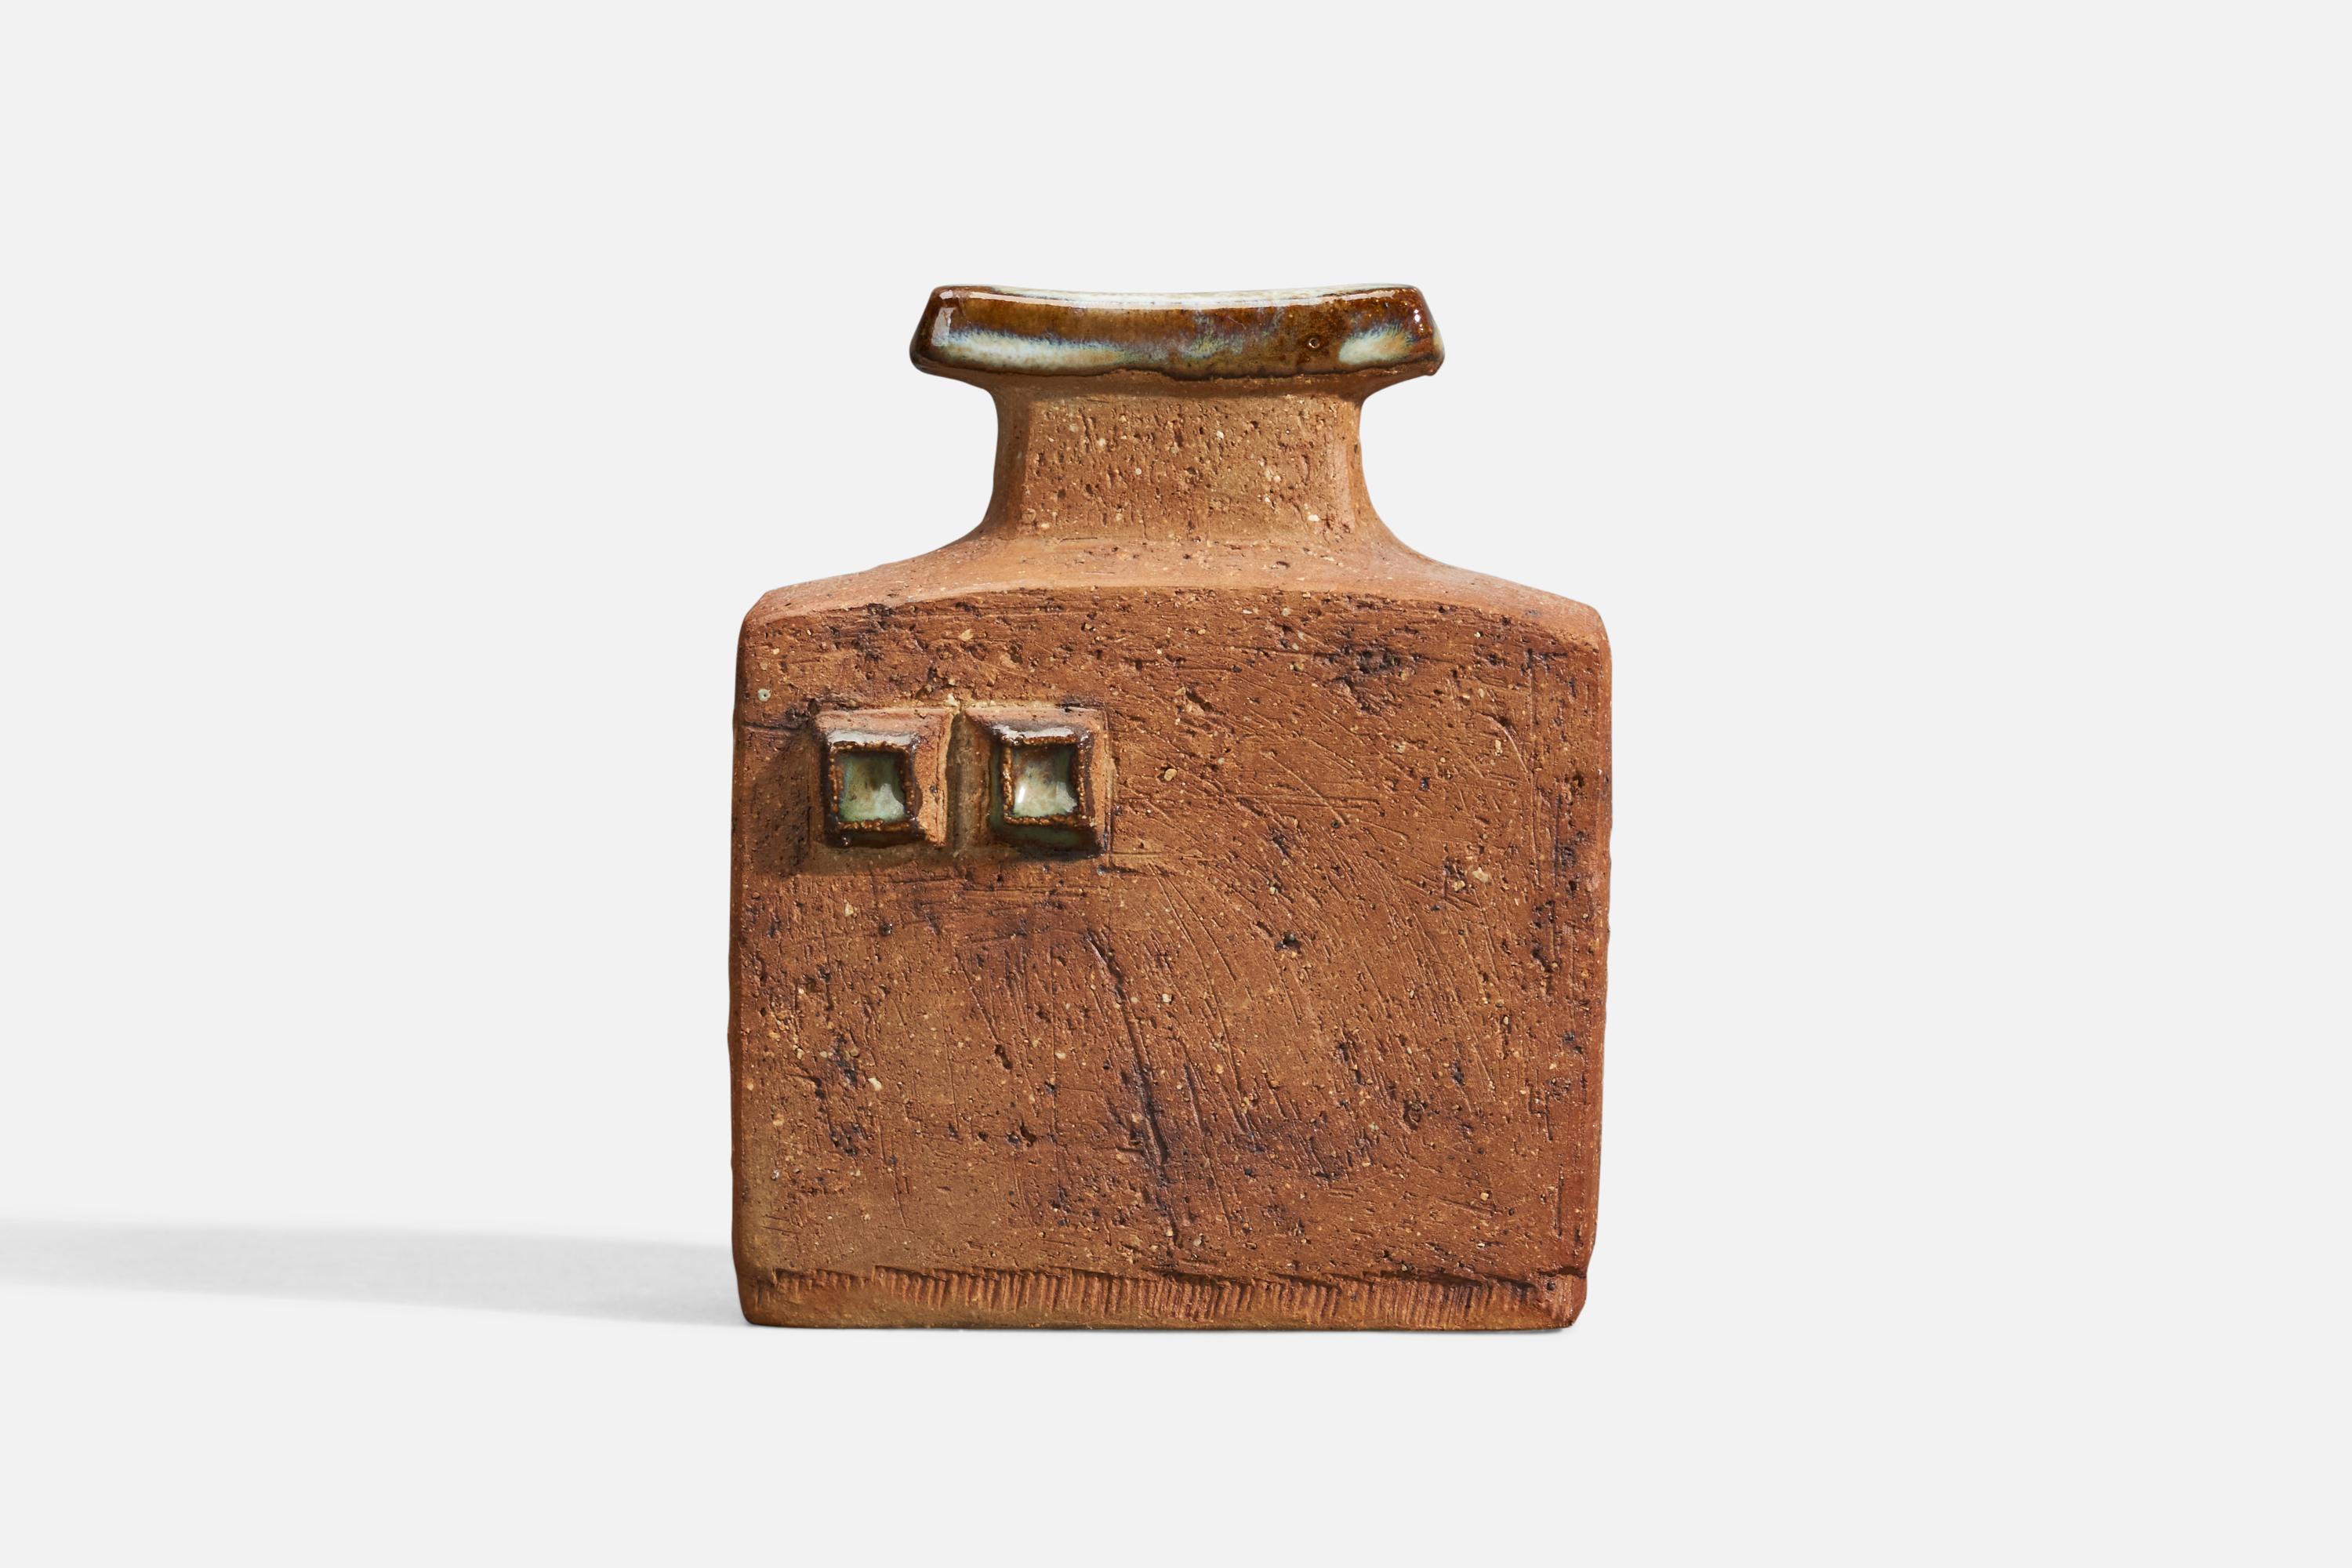 A stoneware vase designed and produced by Curt Magnus Addin, Glumslöv, Sweden, 1970s.